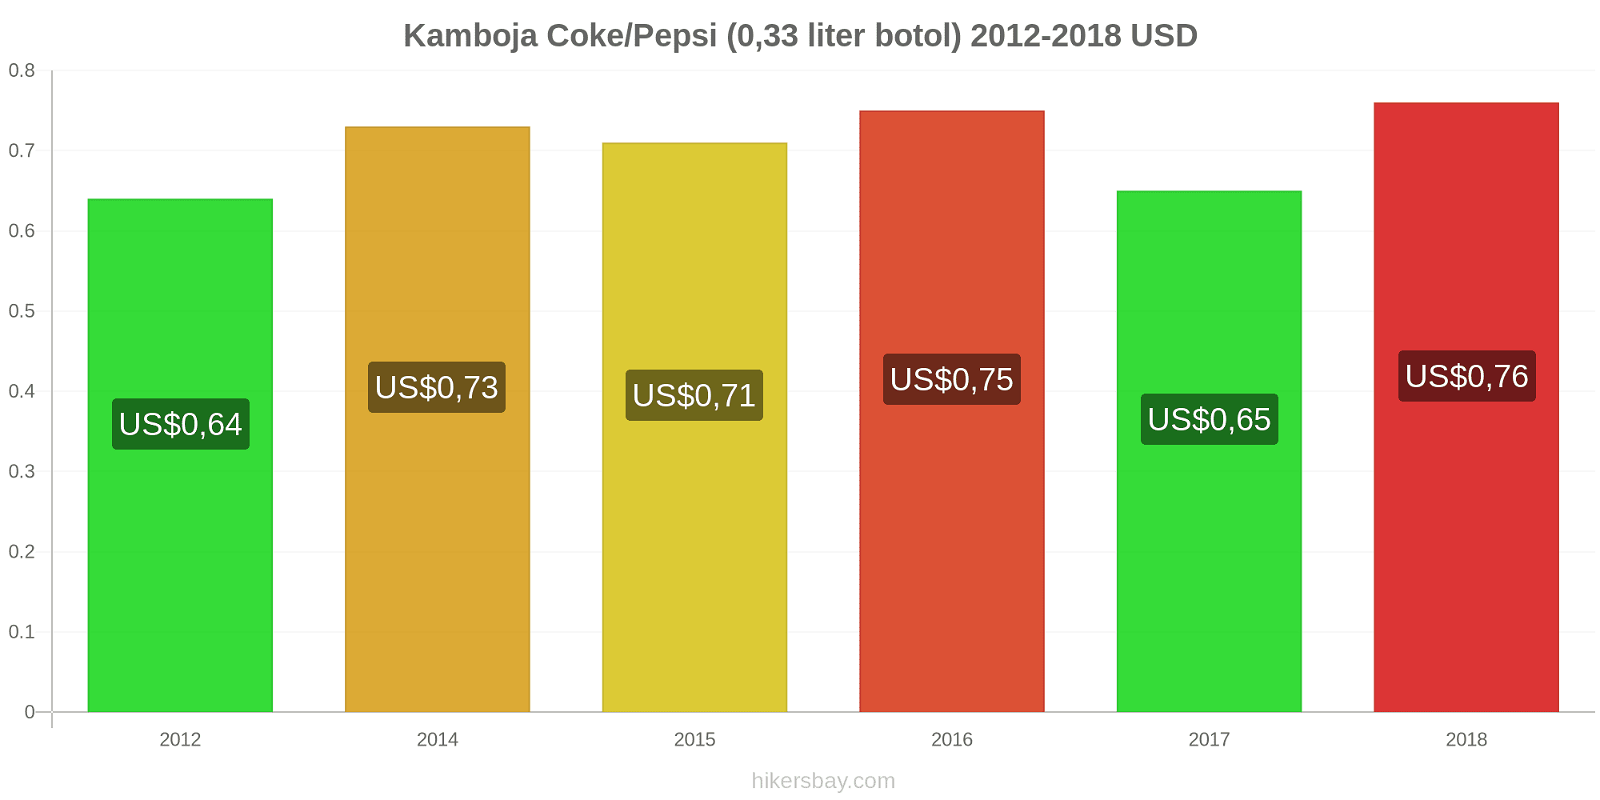 Kamboja perubahan harga Coca-Cola/Pepsi (botol 0.33 liter) hikersbay.com